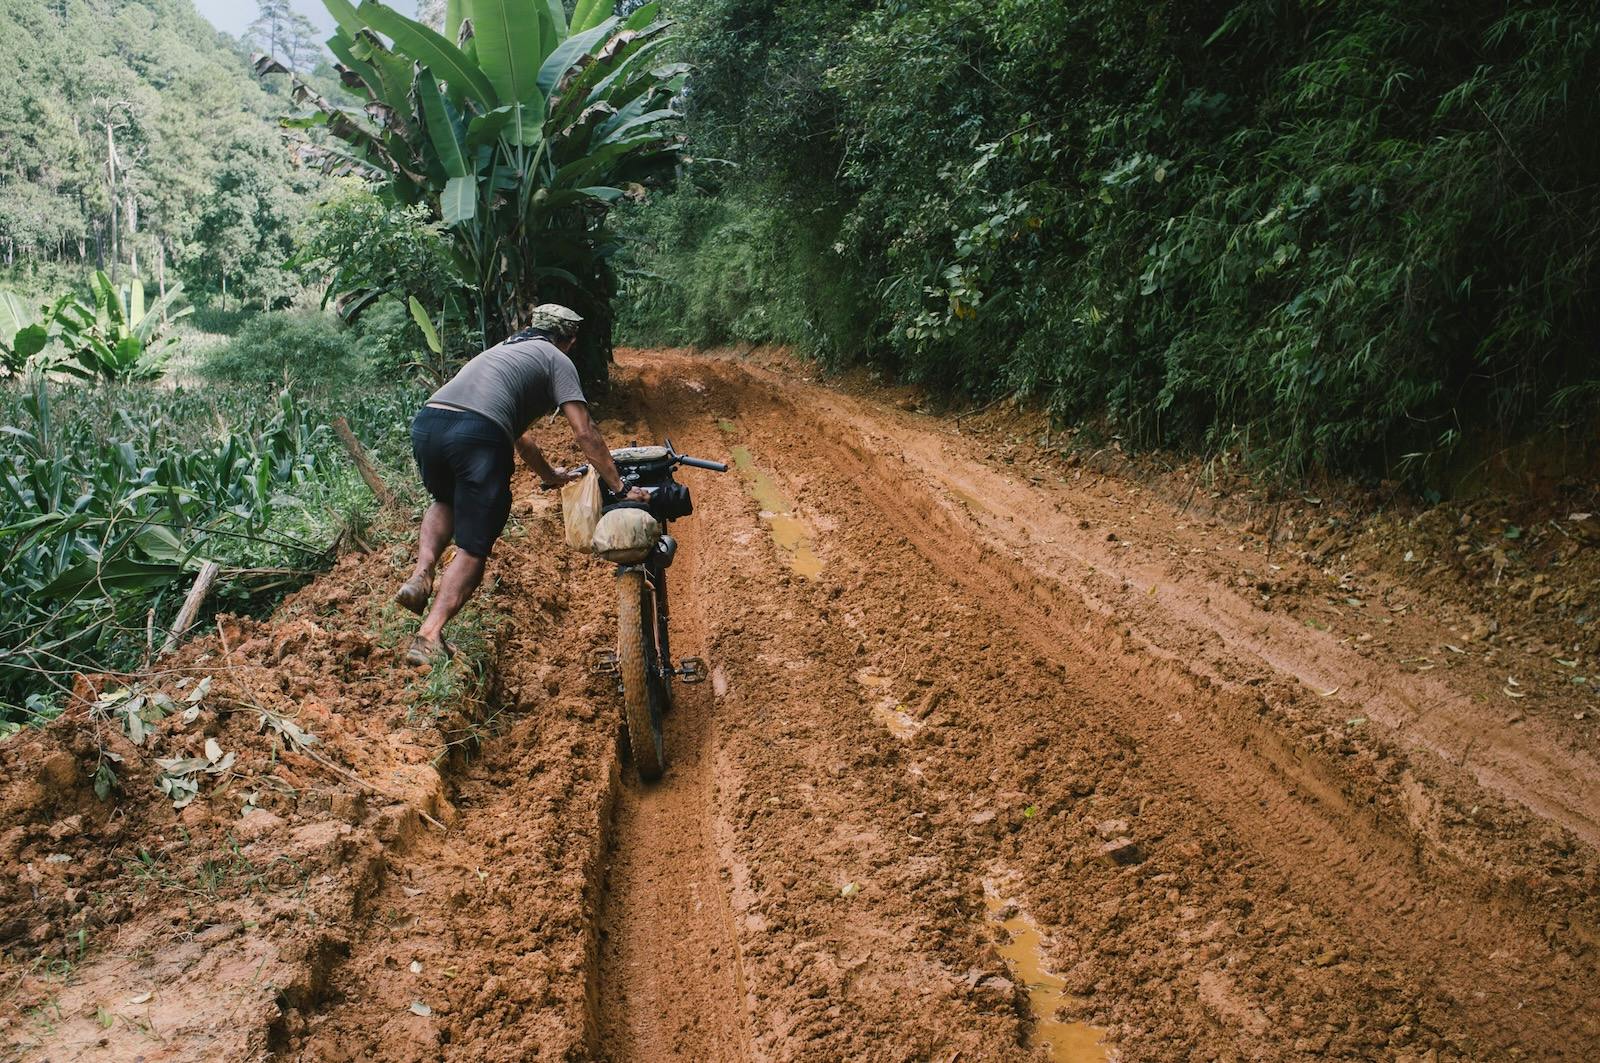 Man Pushing Bike in Mud